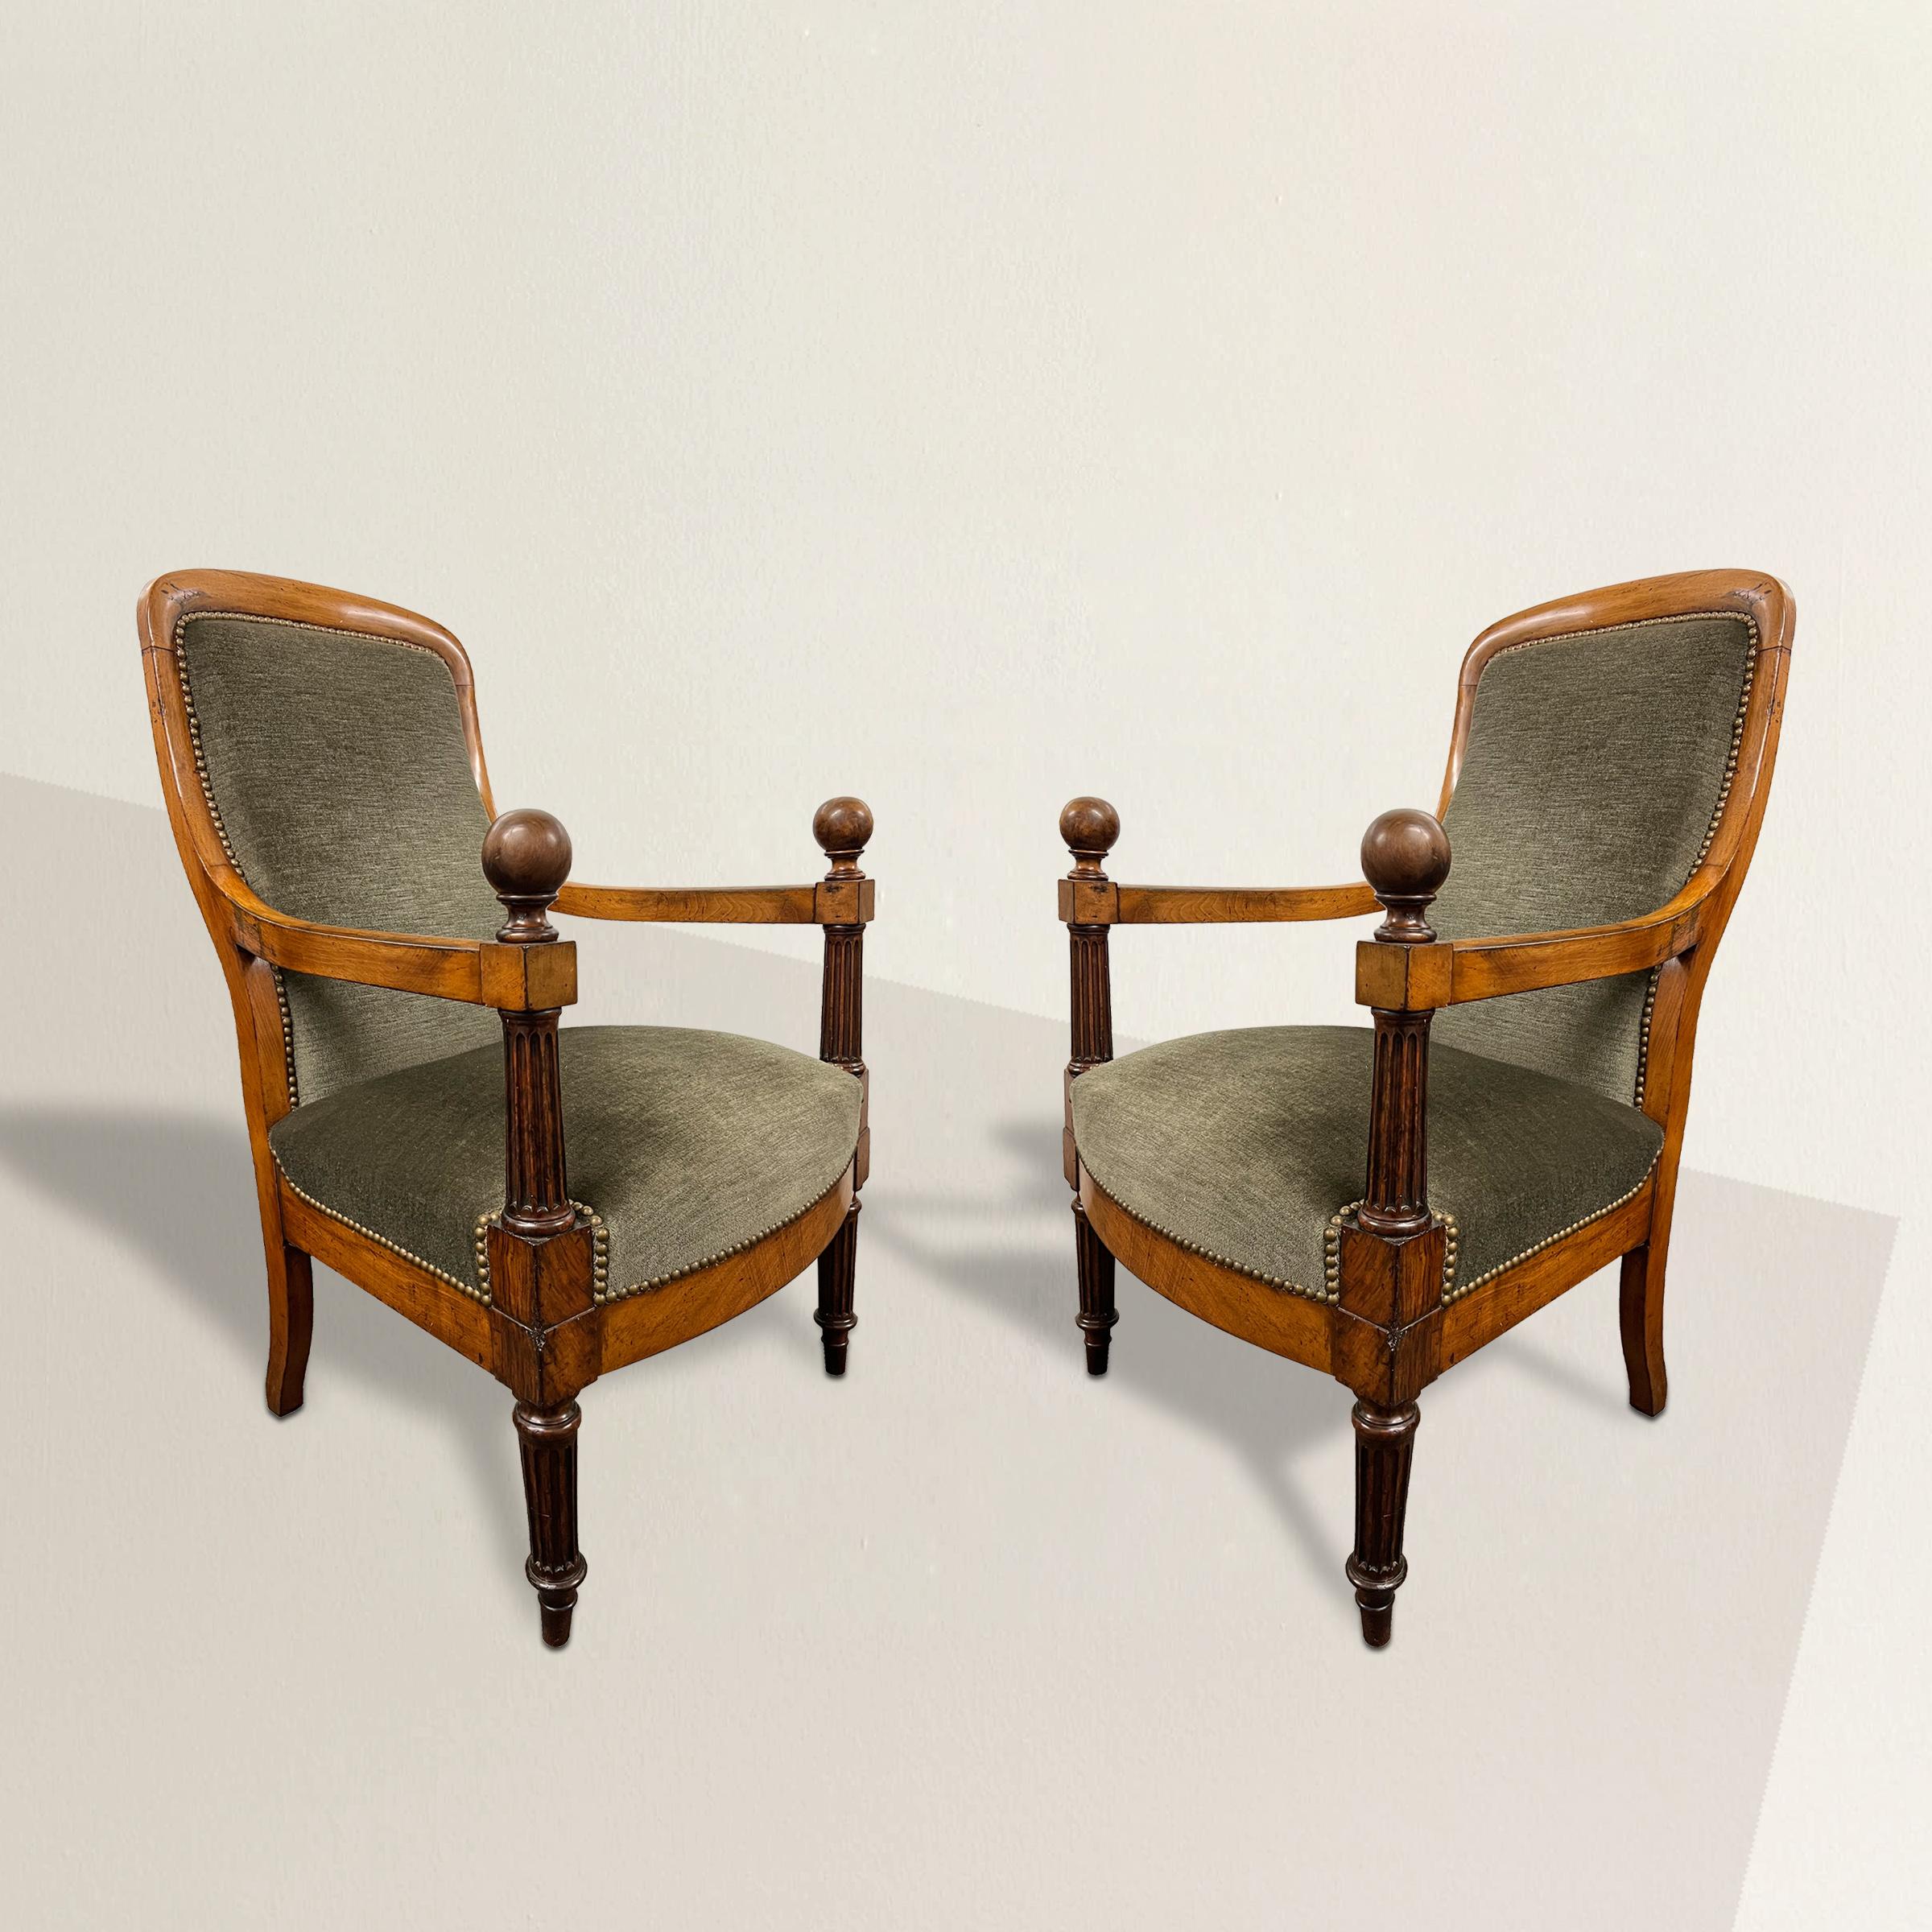 Ein auffälliges und stabiles Paar englischer Sessel aus dem frühen 19. Jahrhundert der Regency-Periode mit perfekt geschwungenen Rückenlehnen, säulenartigen Armstützen mit Kugelknäufen und auf gedrechselten, konischen, kannelierten Vorderbeinen. Die